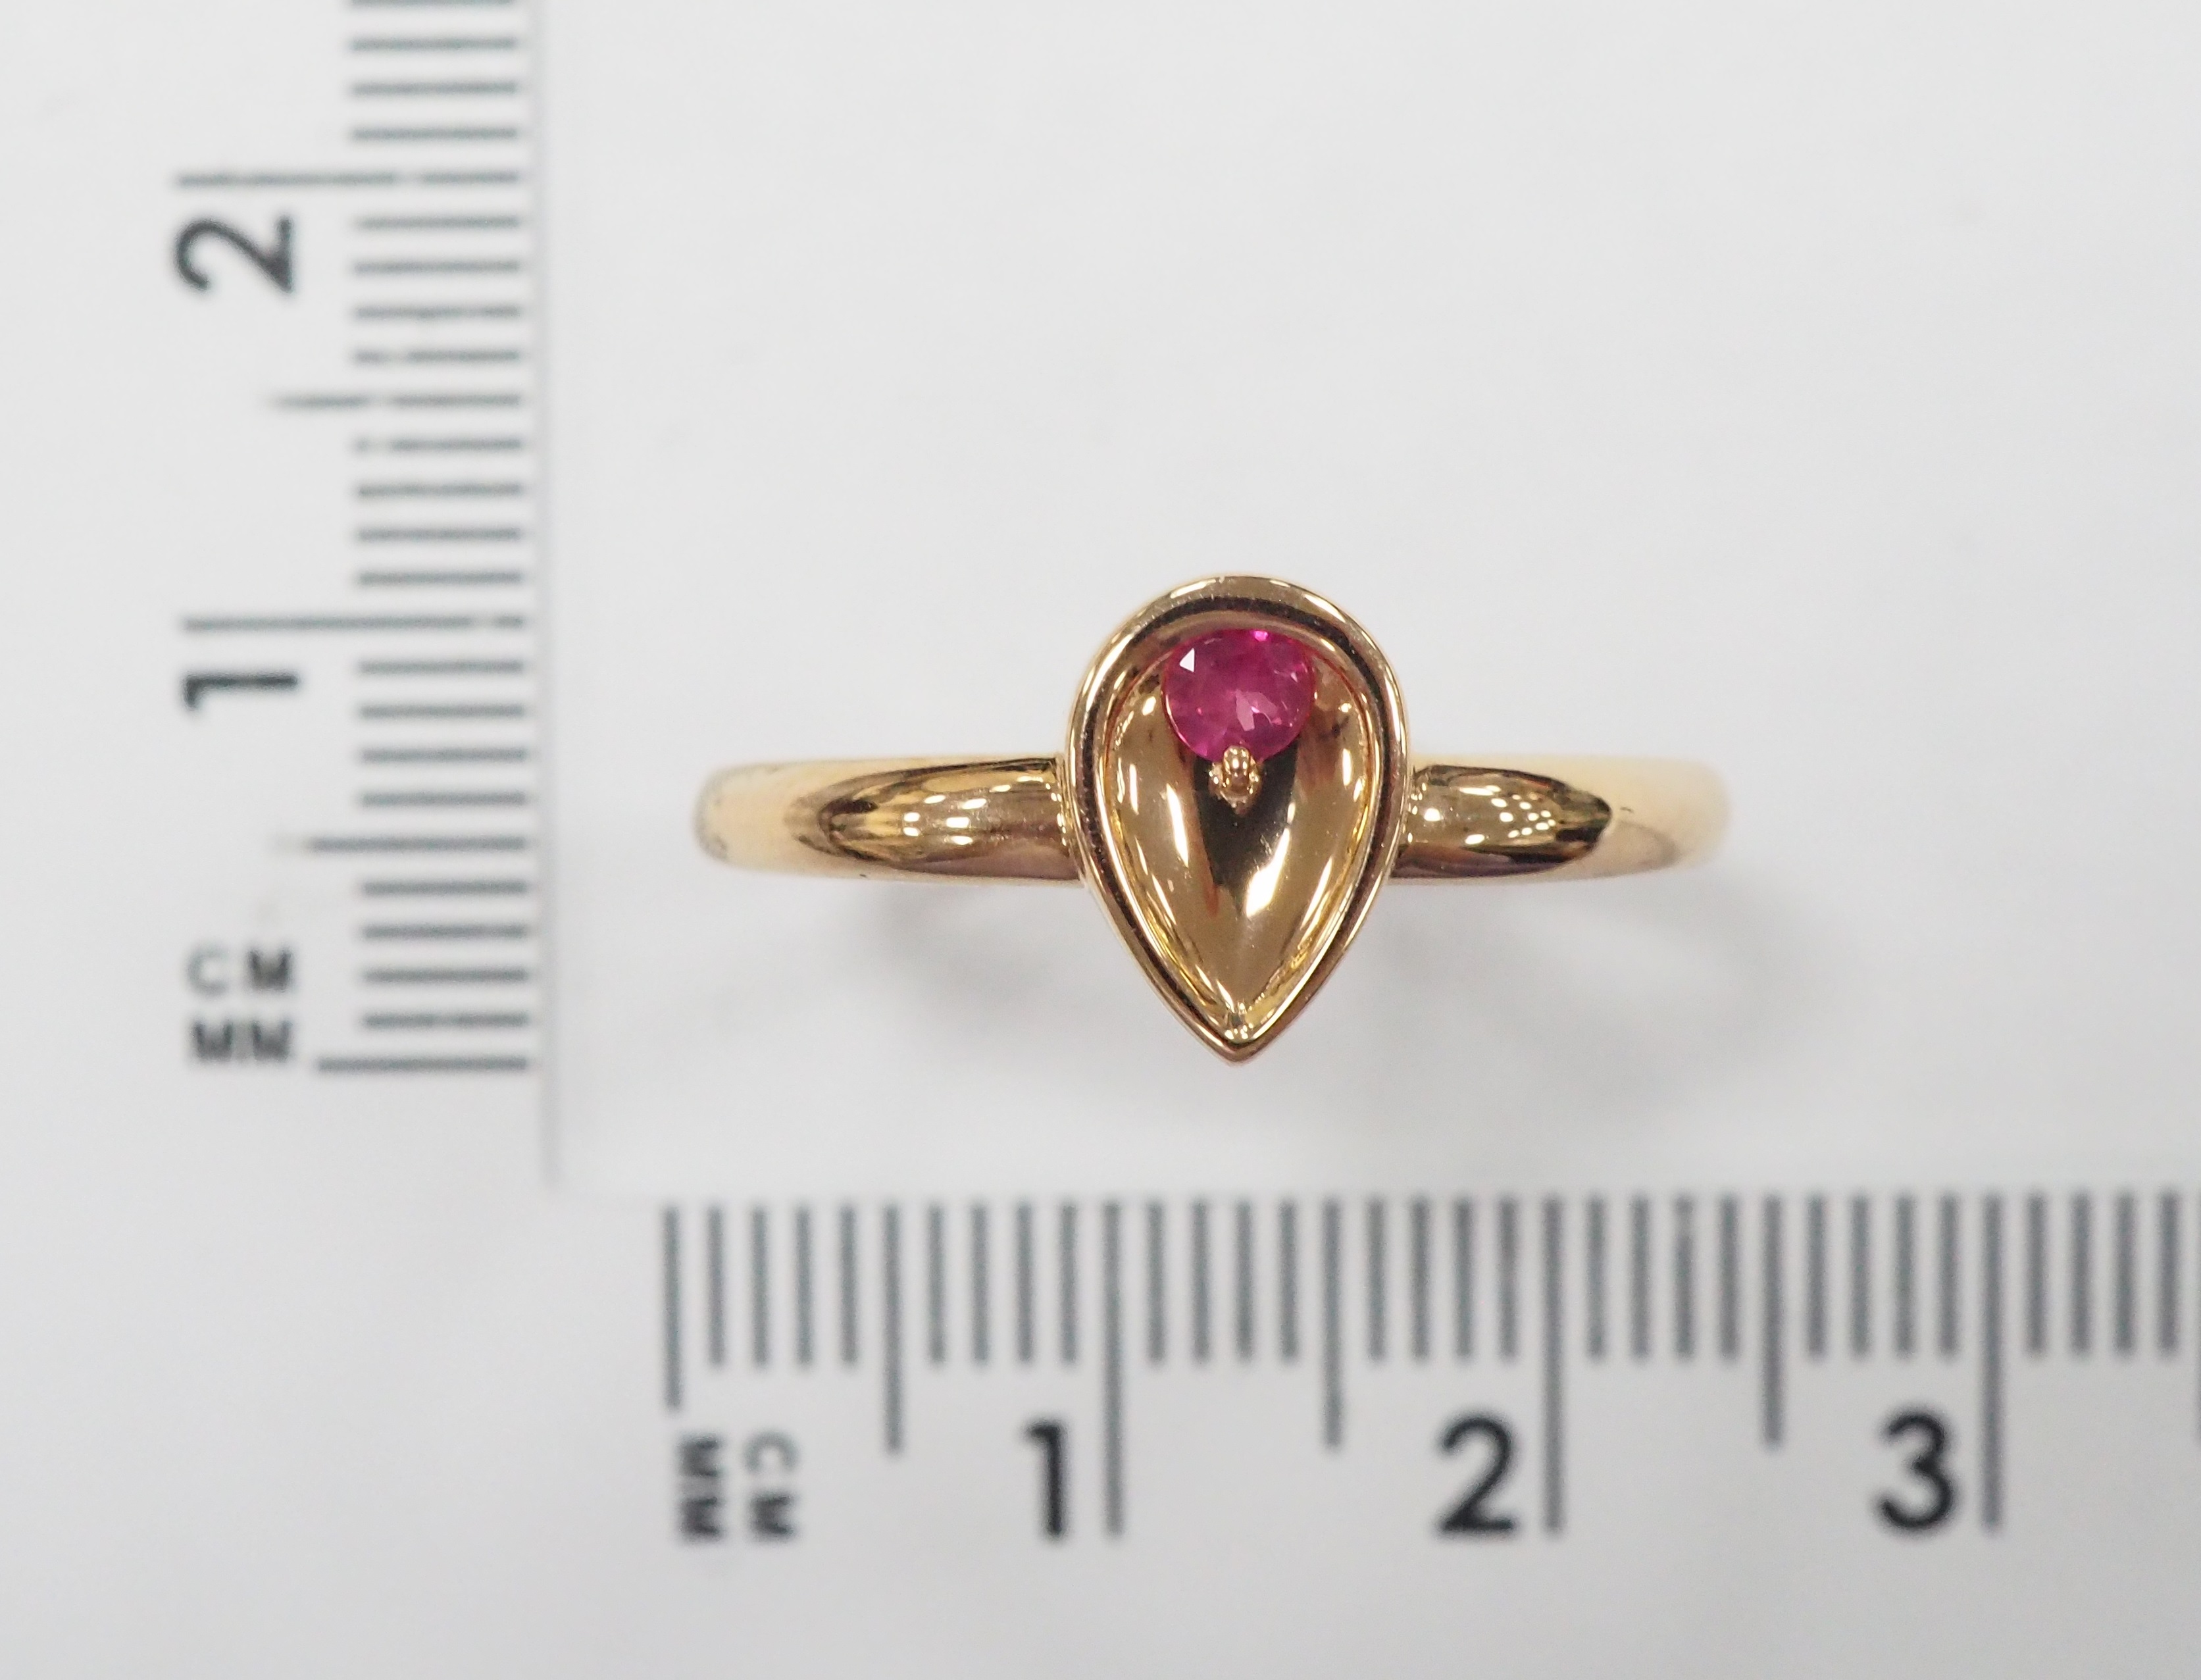 Кольцо из золота с рубином